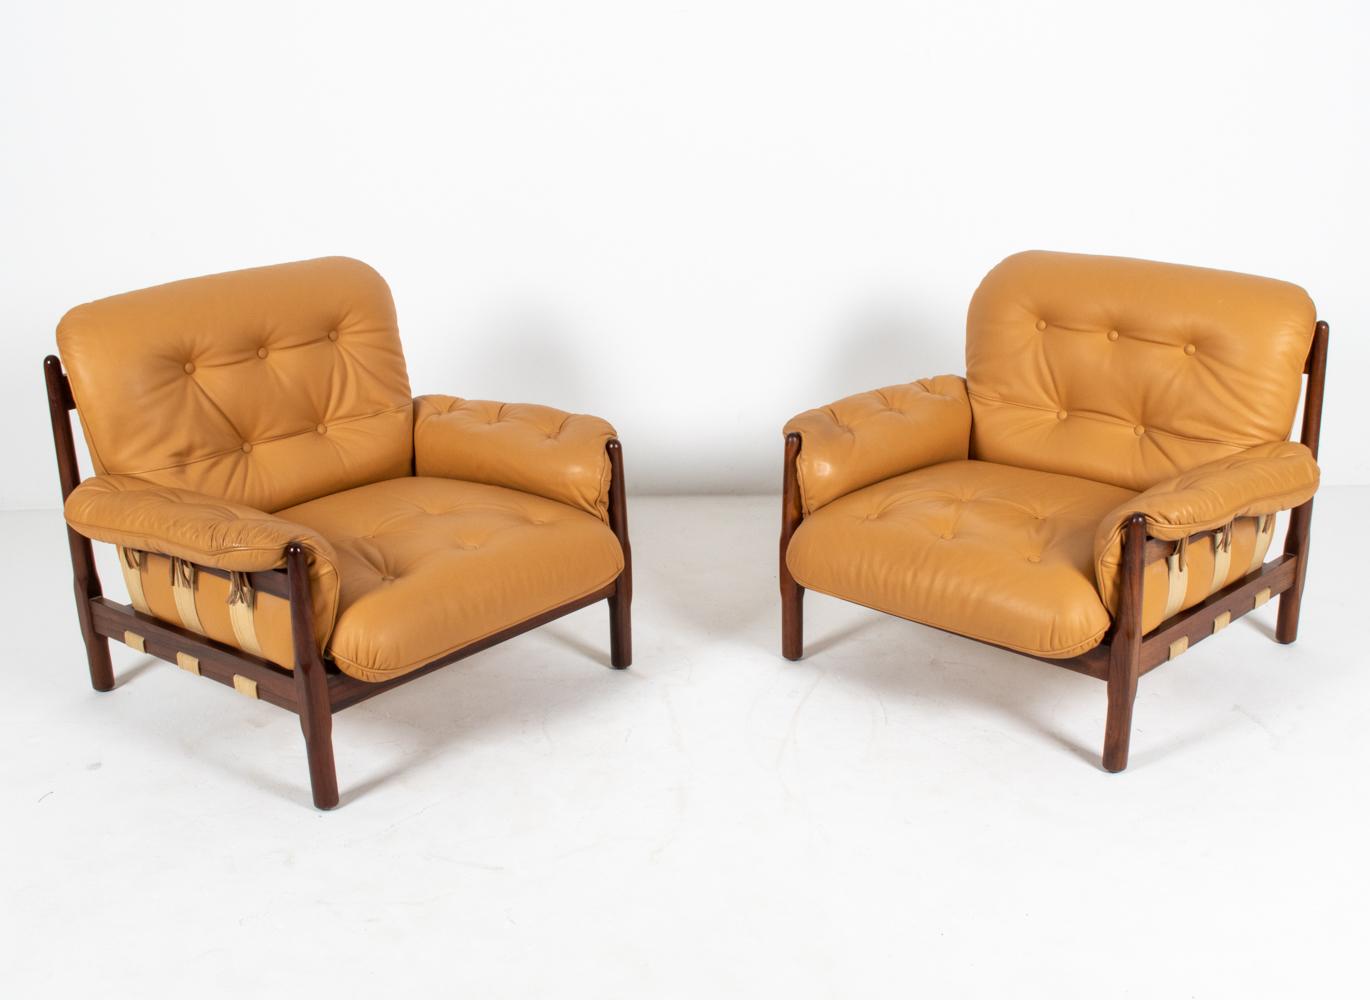 Des proportions généreuses et des finitions luxueuses distinguent cette fabuleuse paire de chaises de salon modernistes brésiliennes. Les cadres sont fabriqués dans un magnifique bois de rose massif, avec un chanfrein sculptural intéressant au